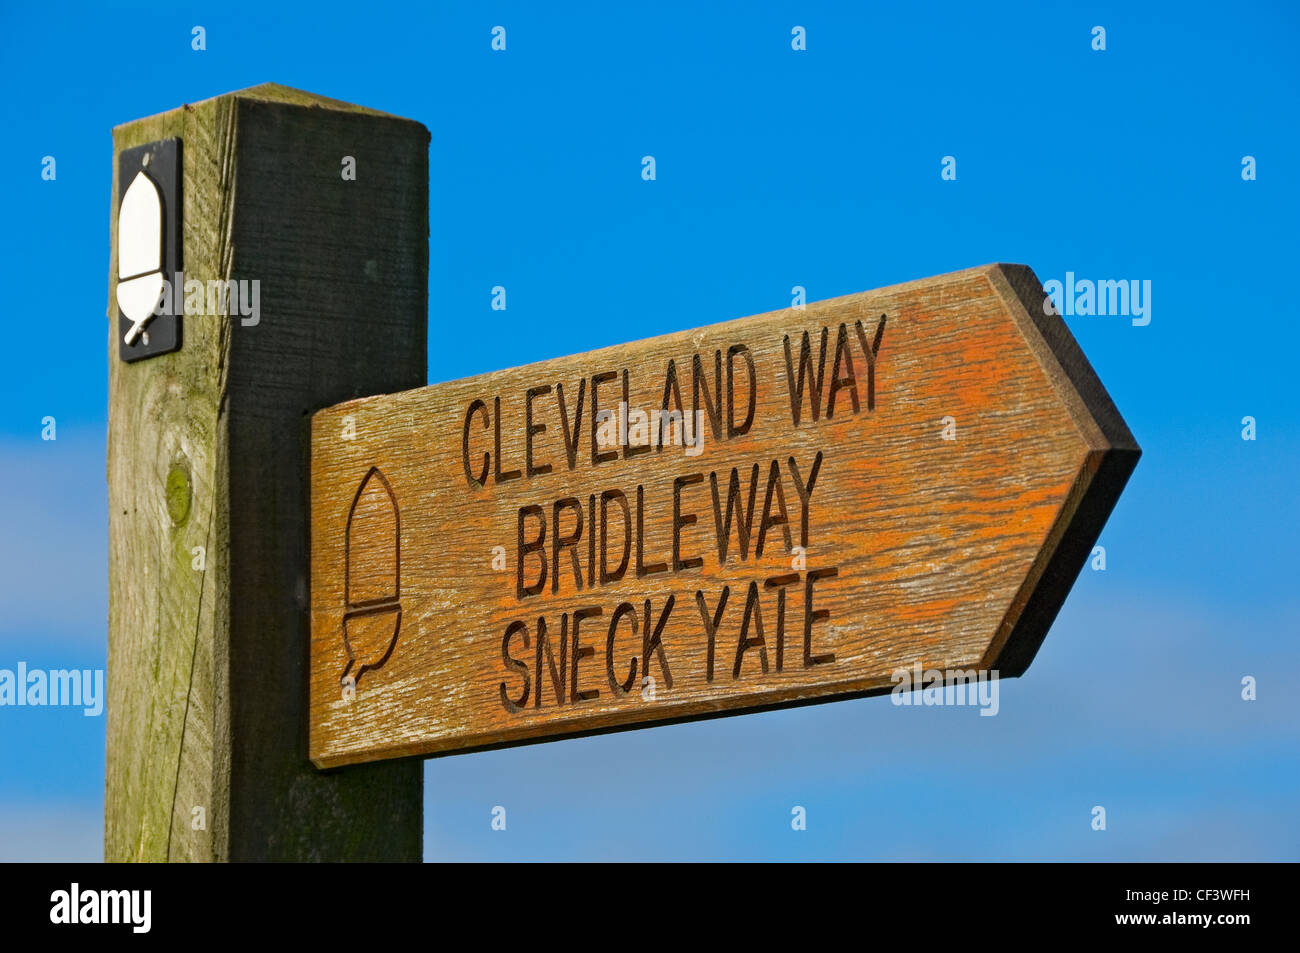 Wegweiser aus Holz zeigt die Richtung zum Sneck Yate unterwegs Cleveland, einer der zwölf benannten National Trails. Stockfoto